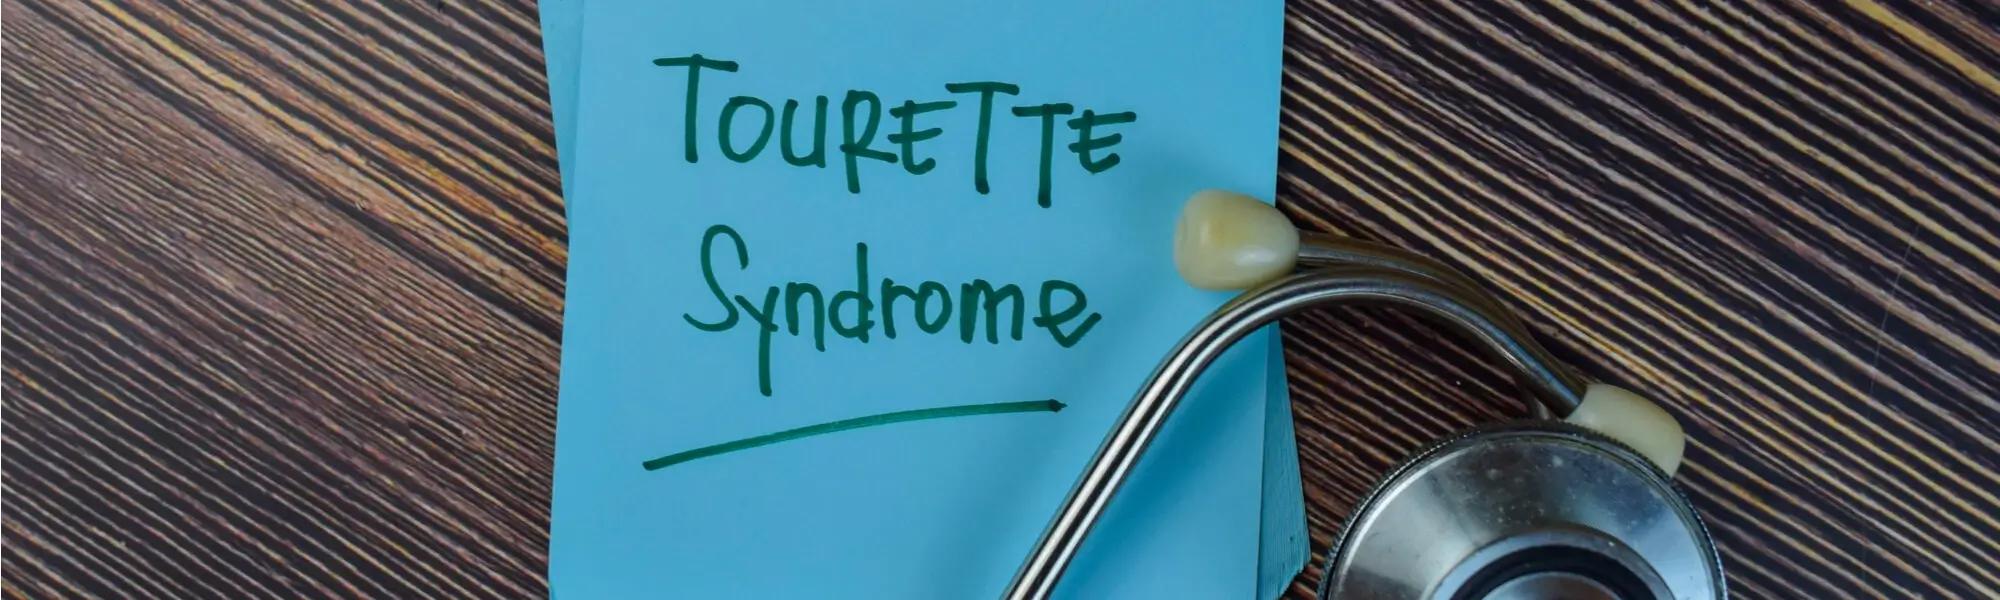 Zespół Tourette 'a - czym jest, jakie są pierwsze objawy, poznaj przyczyny i leczenie